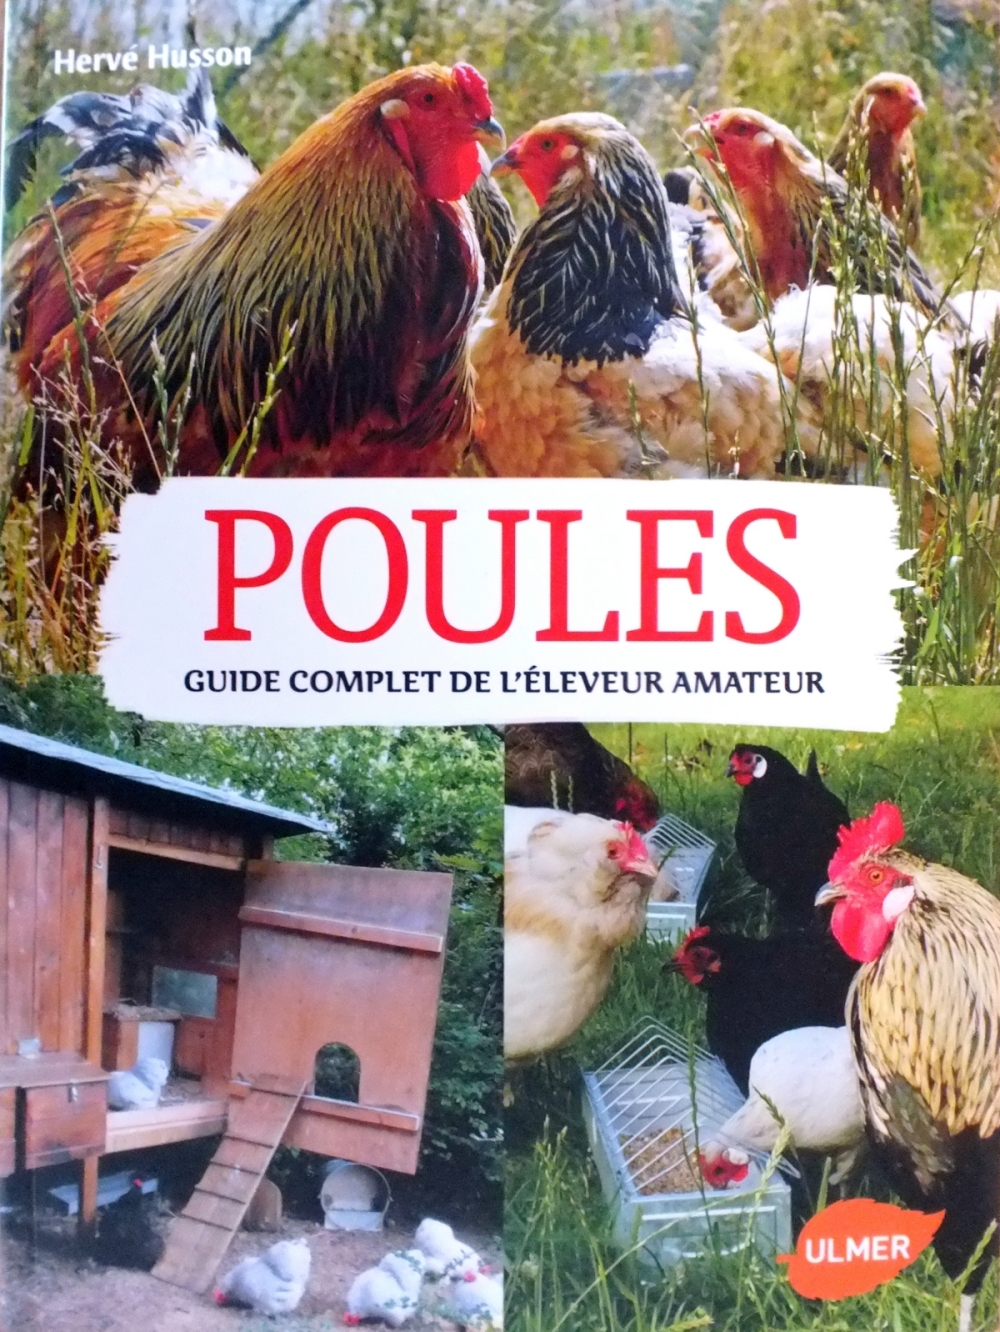 POULES : Guide complet de l'éleveur amateur (ULMER) 15020303393818276712929841